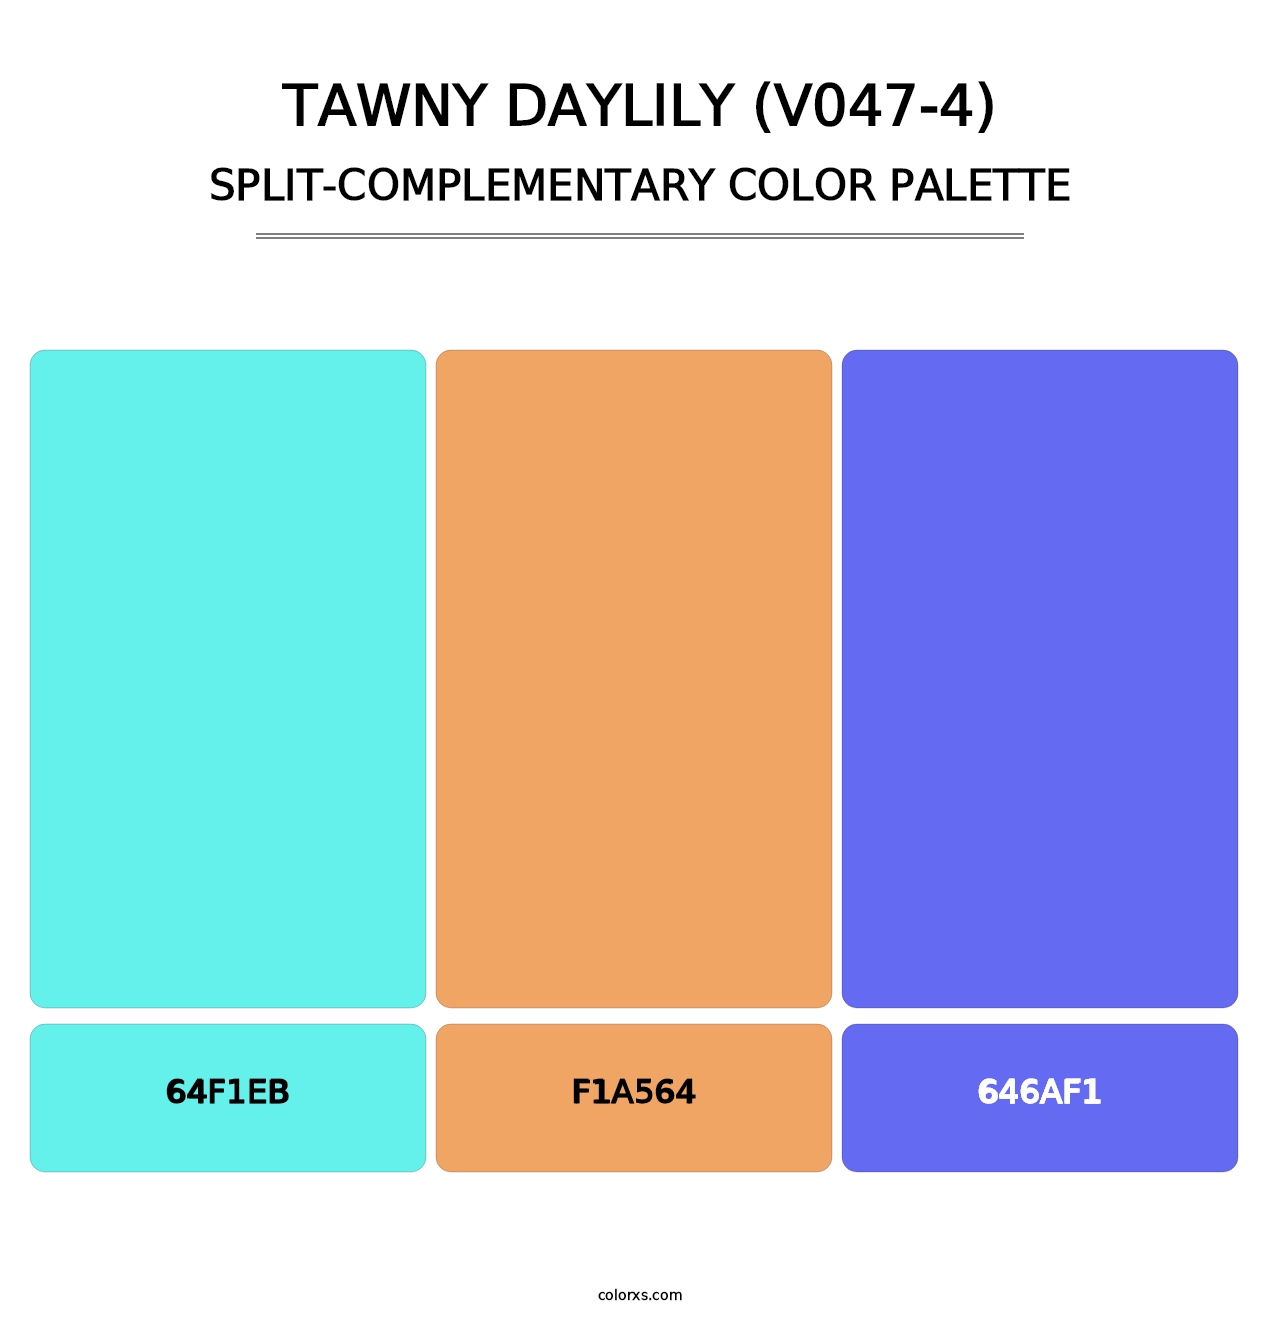 Tawny Daylily (V047-4) - Split-Complementary Color Palette